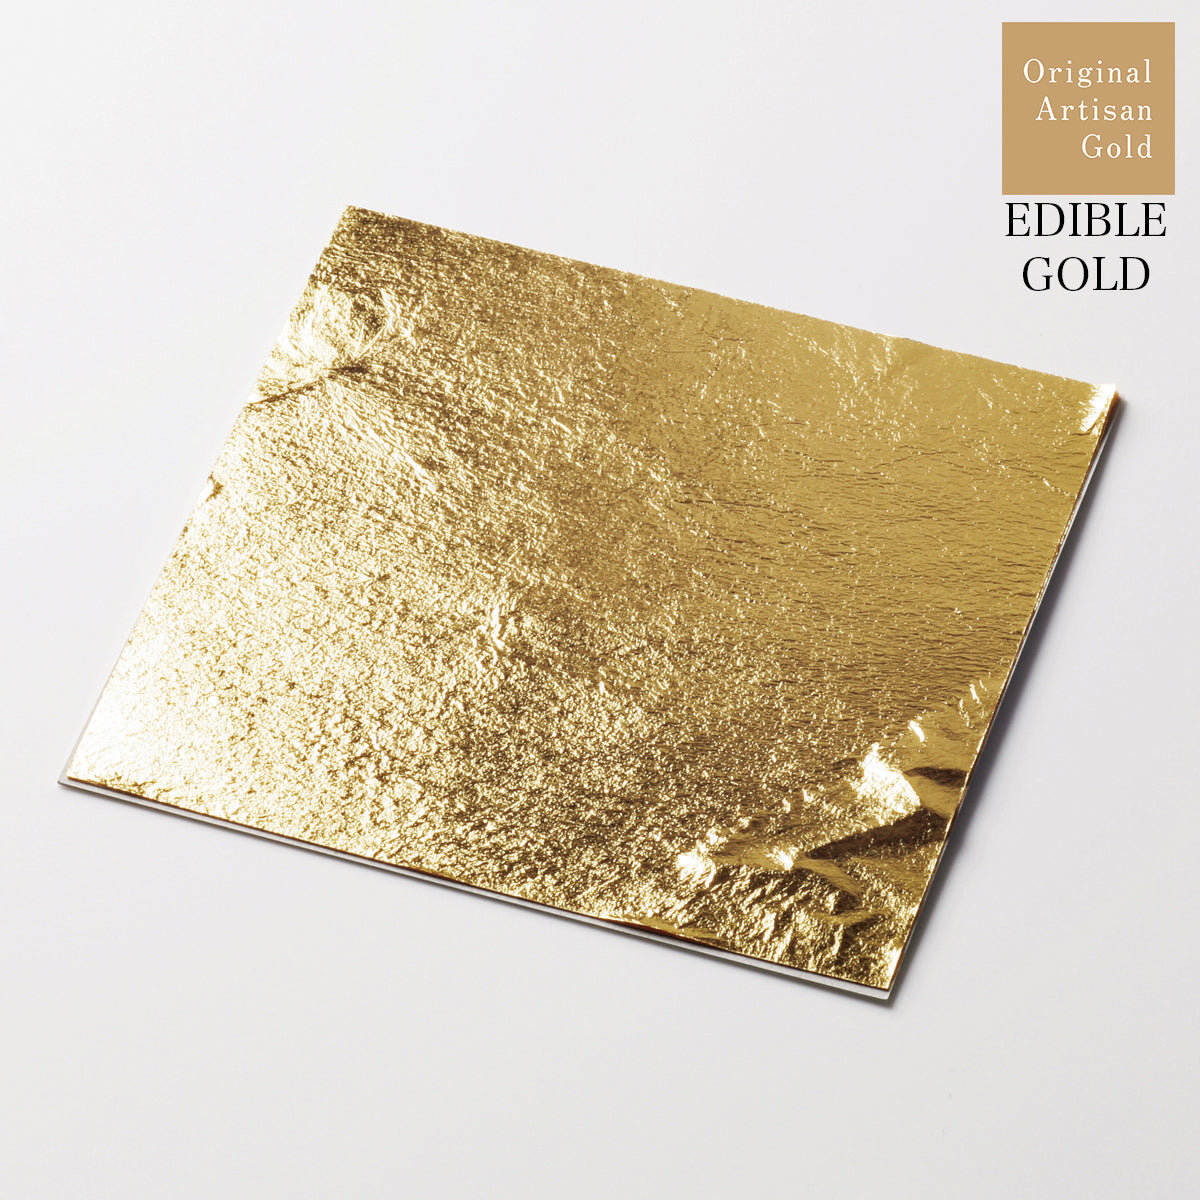 Edible Loose Leaf: Gold Leaf – Original Artisan Gold